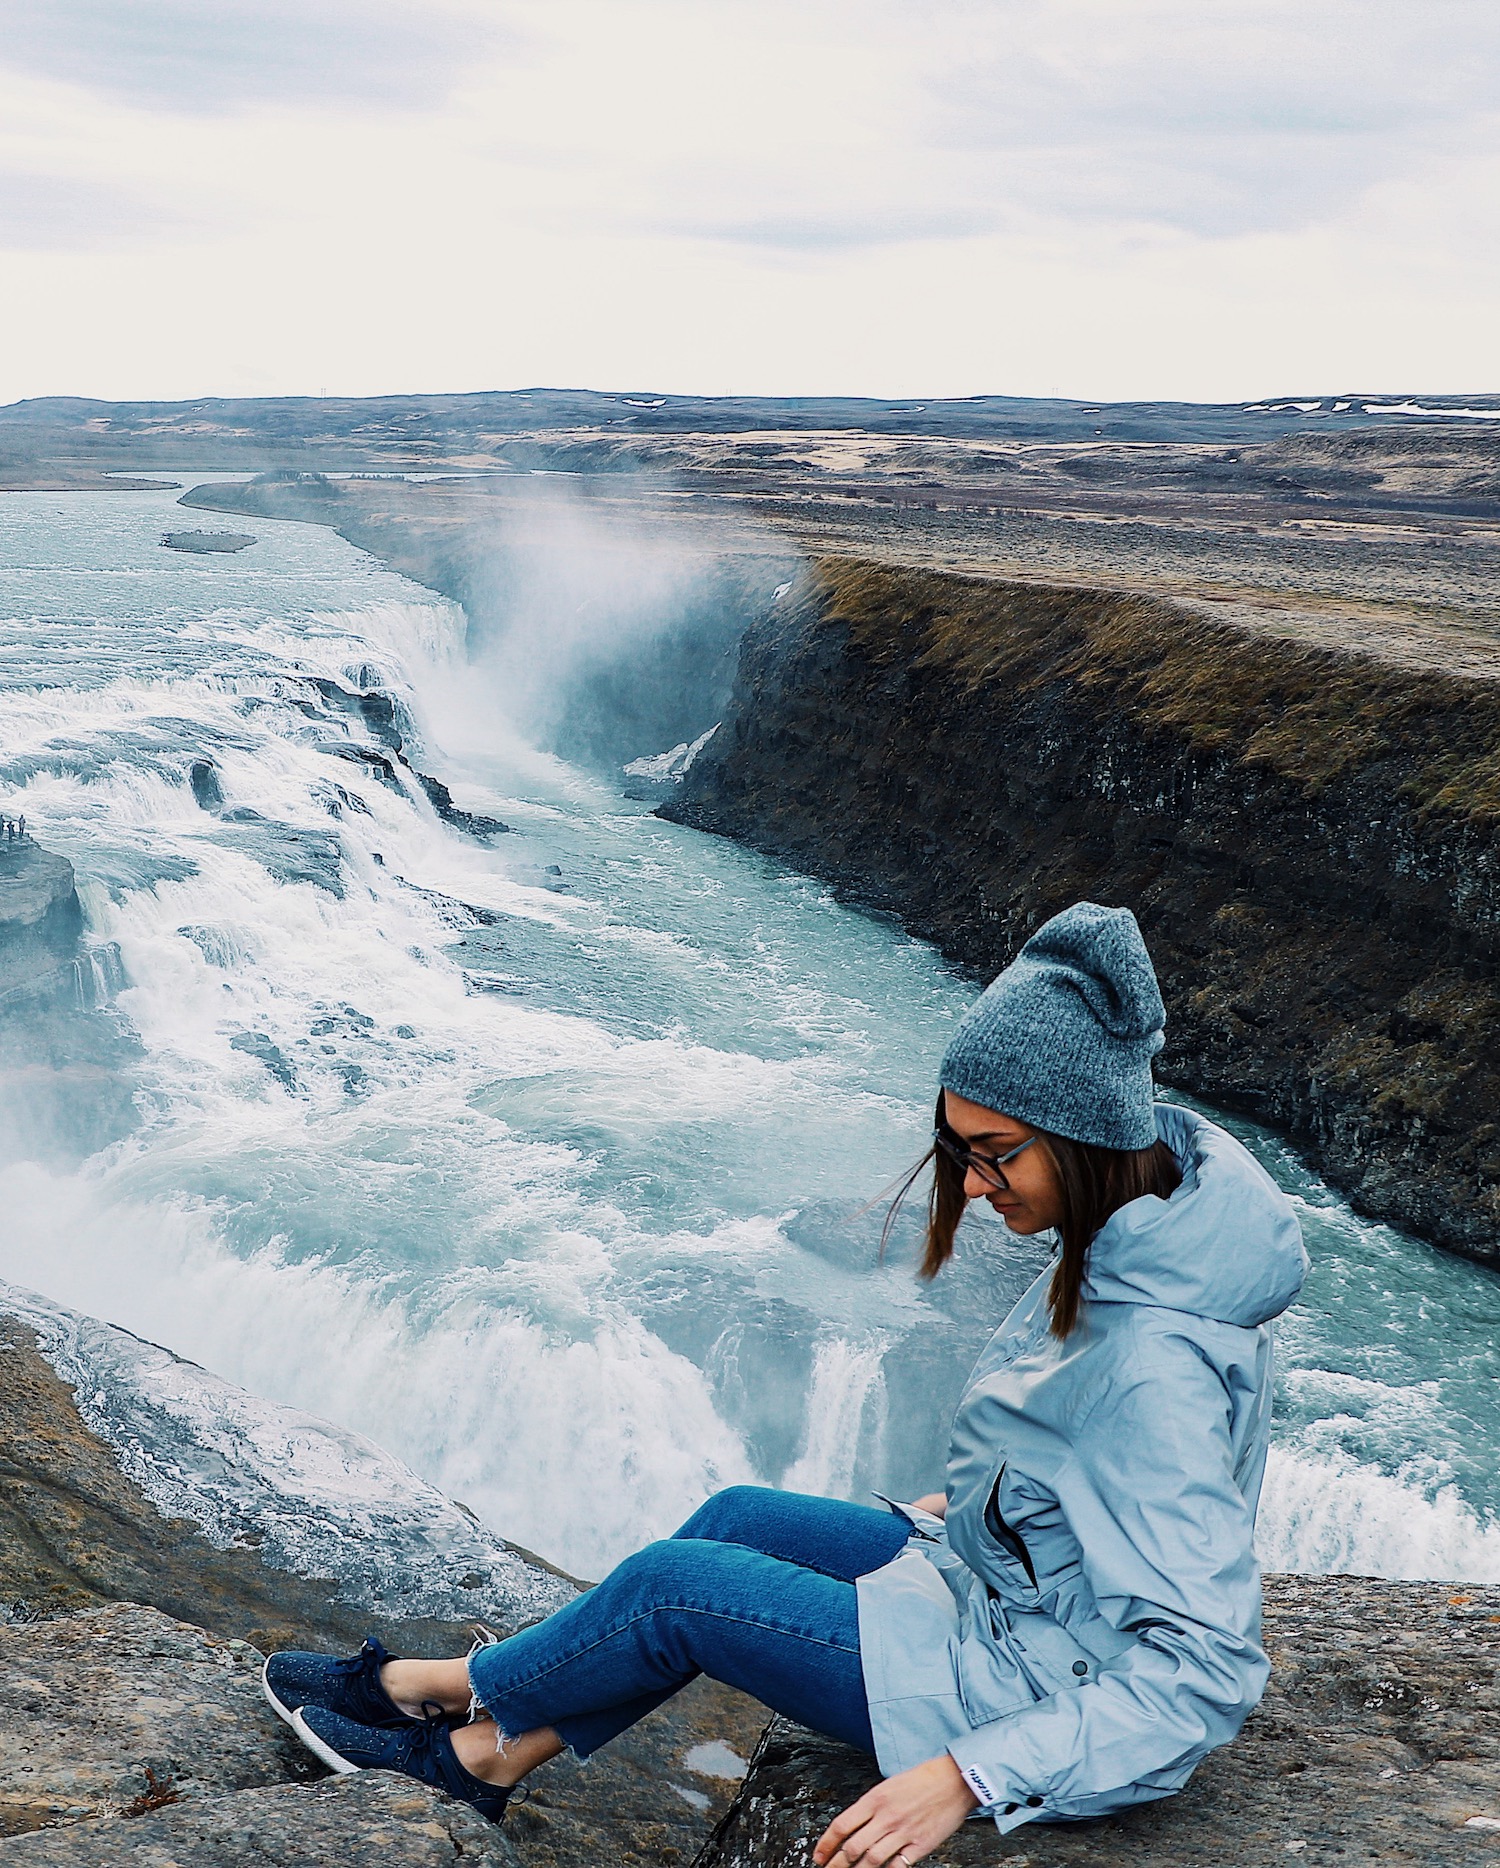 "красиво, но дорого": 10 способов сэкономить на путешествии по исландии